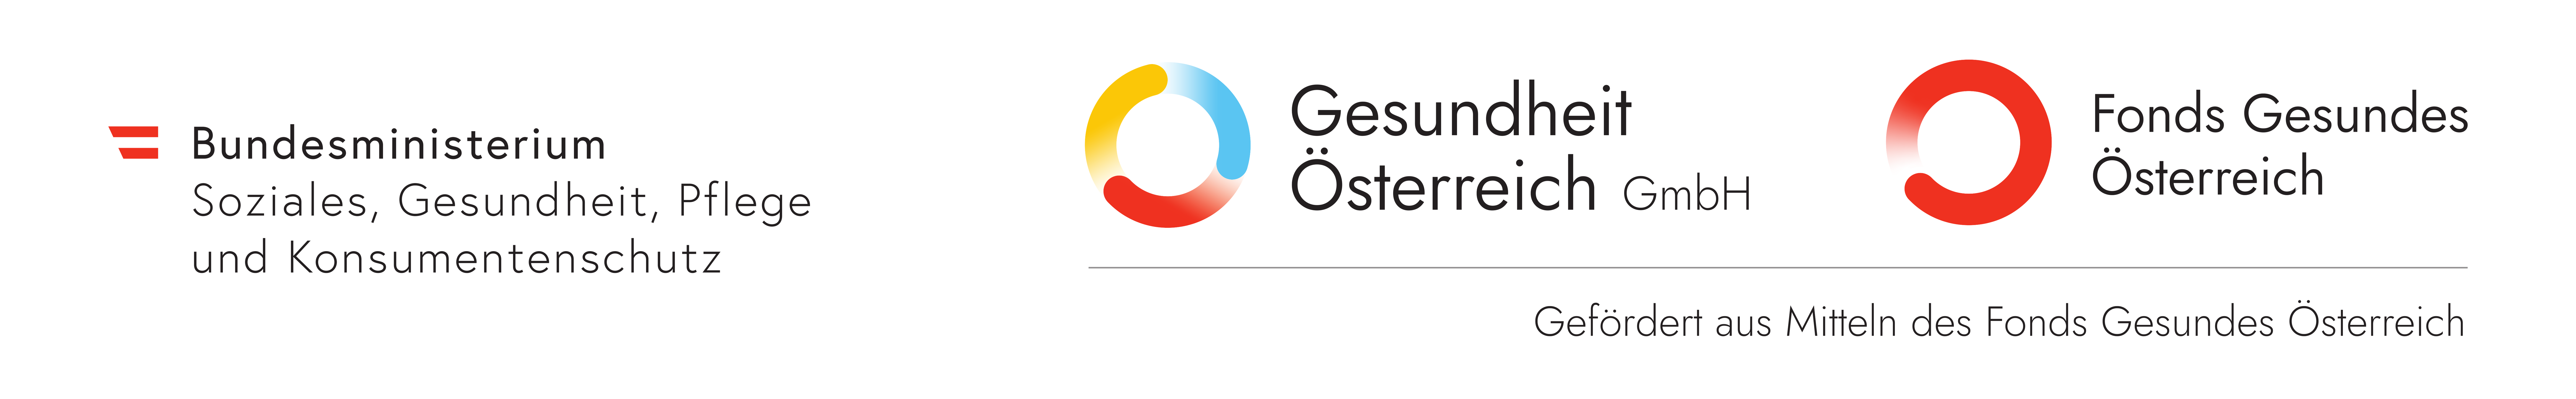 Logos mit Zusatz Gefördert aus Mitteln des Fonds Gesundes Österreich